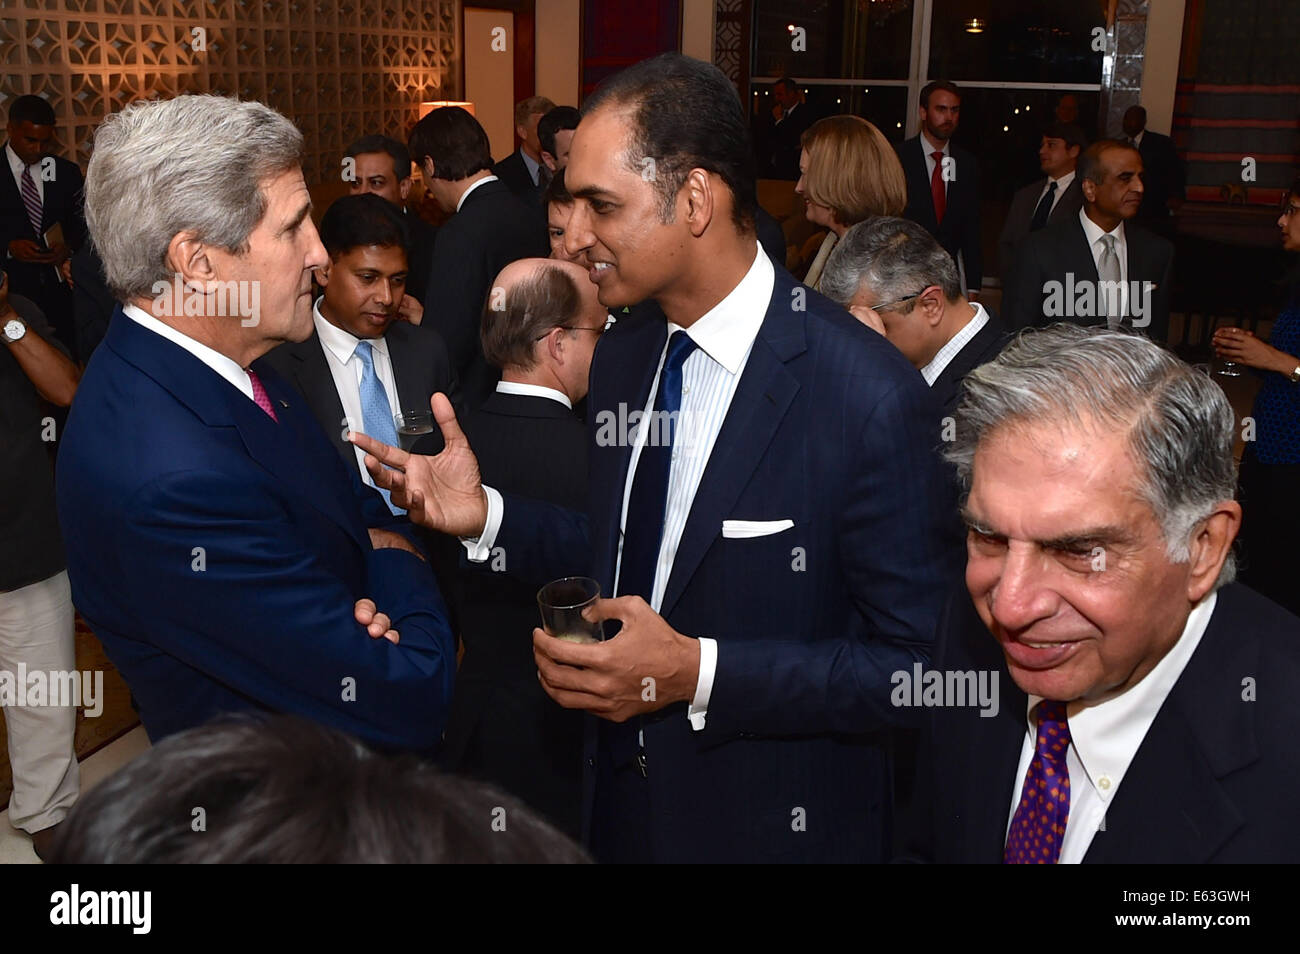 US-Außenminister John Kerry plaudert mit G.V Sanjay Reddy, stellvertretender Vorsitzender des GVK Power und Infrastructure Limited, vor einem Arbeitsessen am 30. Juli 2014, mit indischen und amerikanischen Geschäftsleuten im Roosevelt House - Residenz des Botschafters der USA in Stockfoto